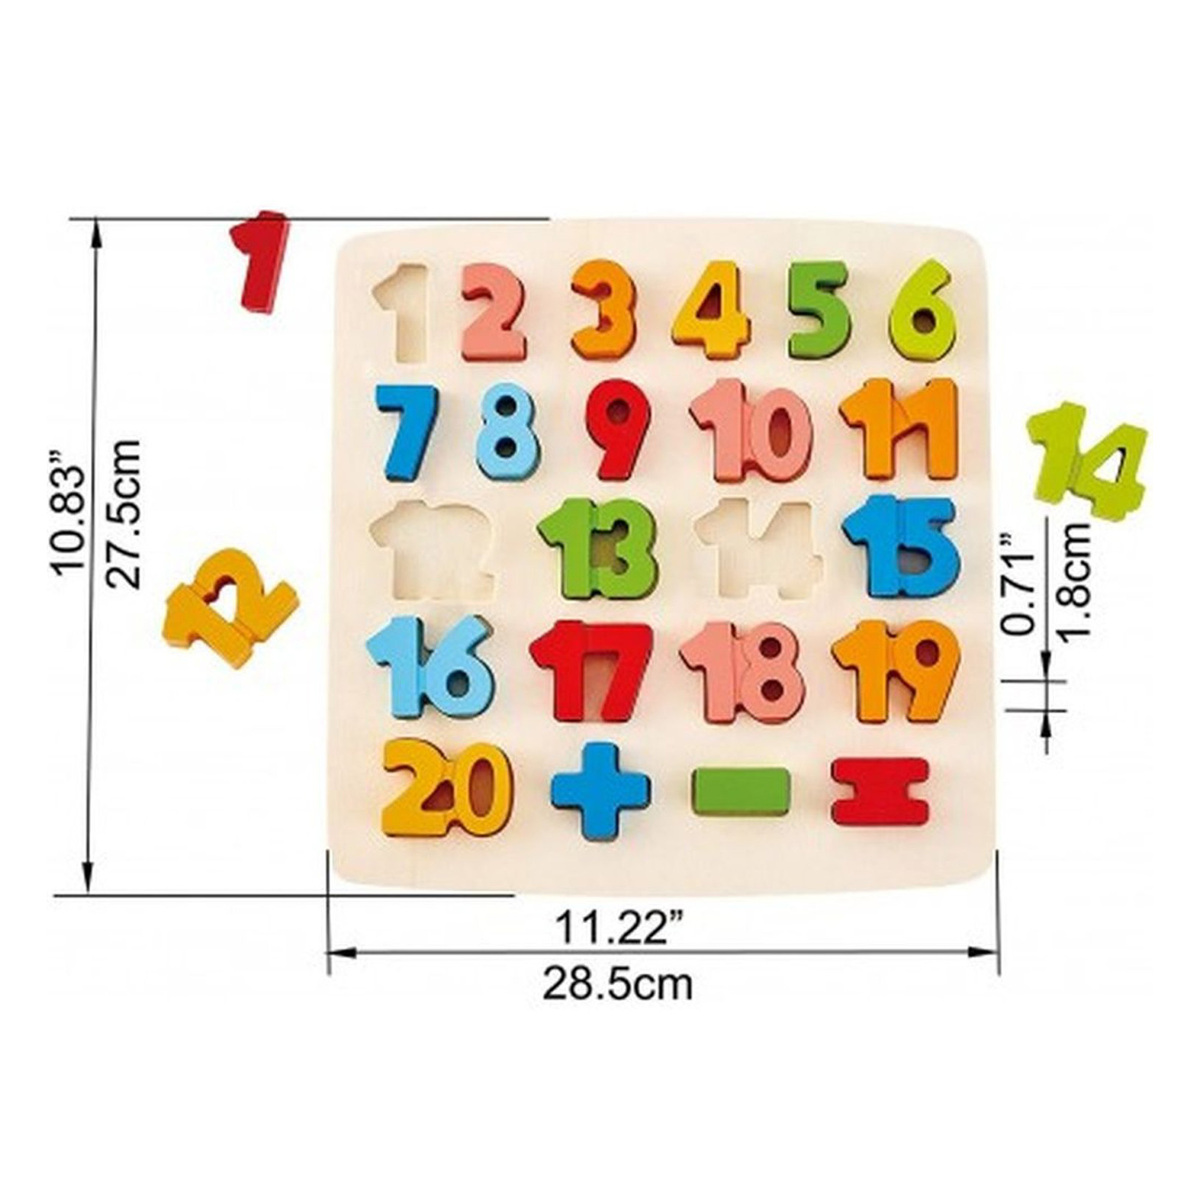 هيب مجموعة ألغاز الرياضيات ذات الارقام المكتنزة للأطفال، E1550